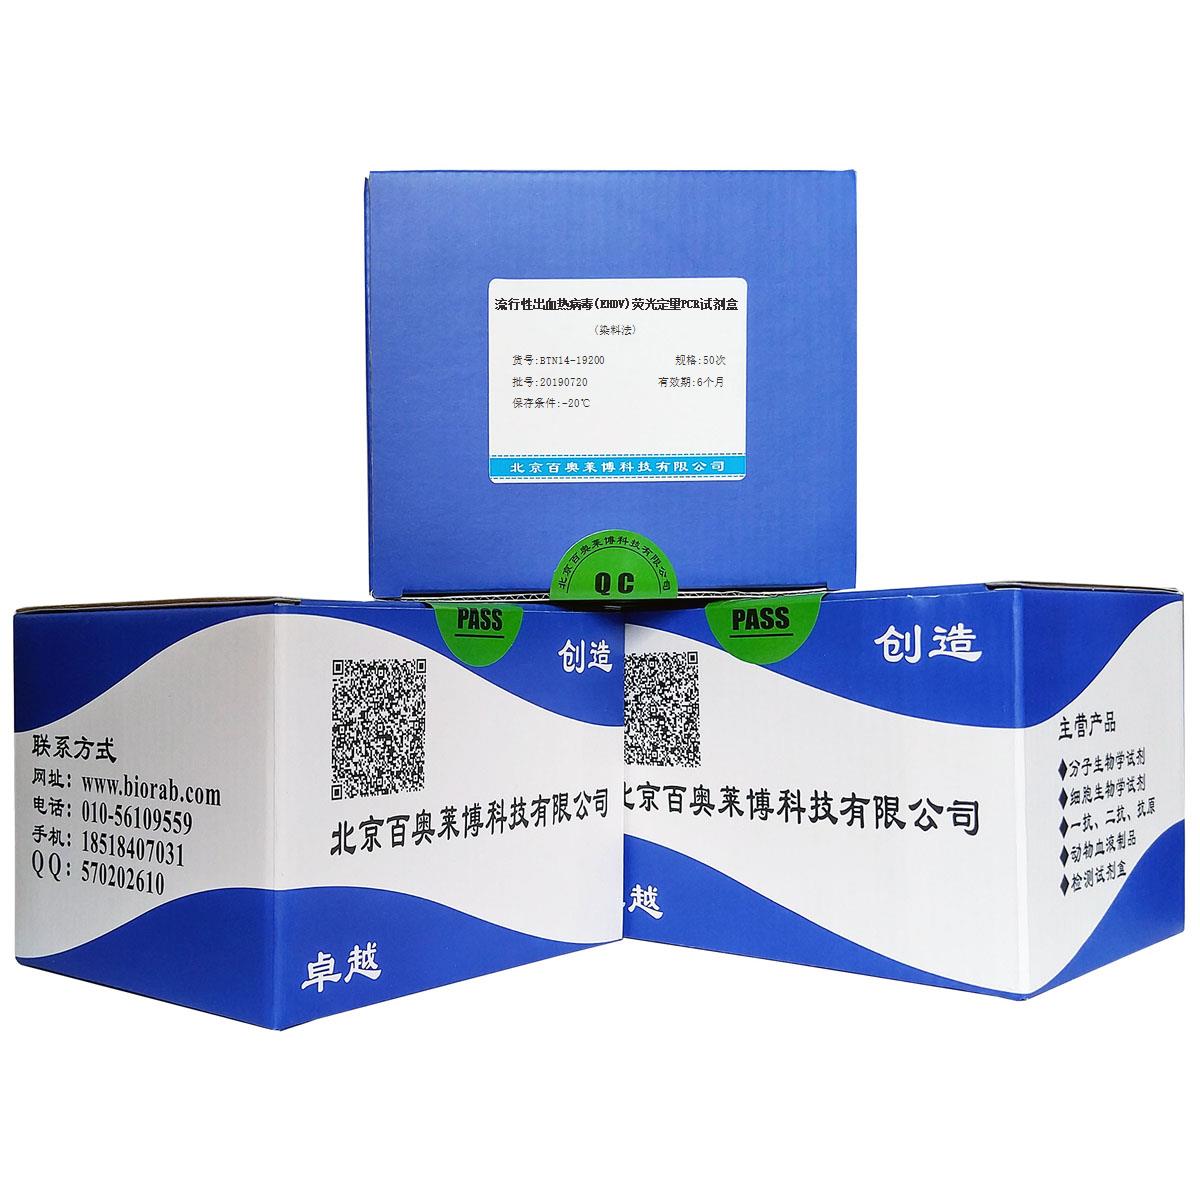 流行性出血热病毒(EHDV)荧光定量PCR试剂盒(染料法)